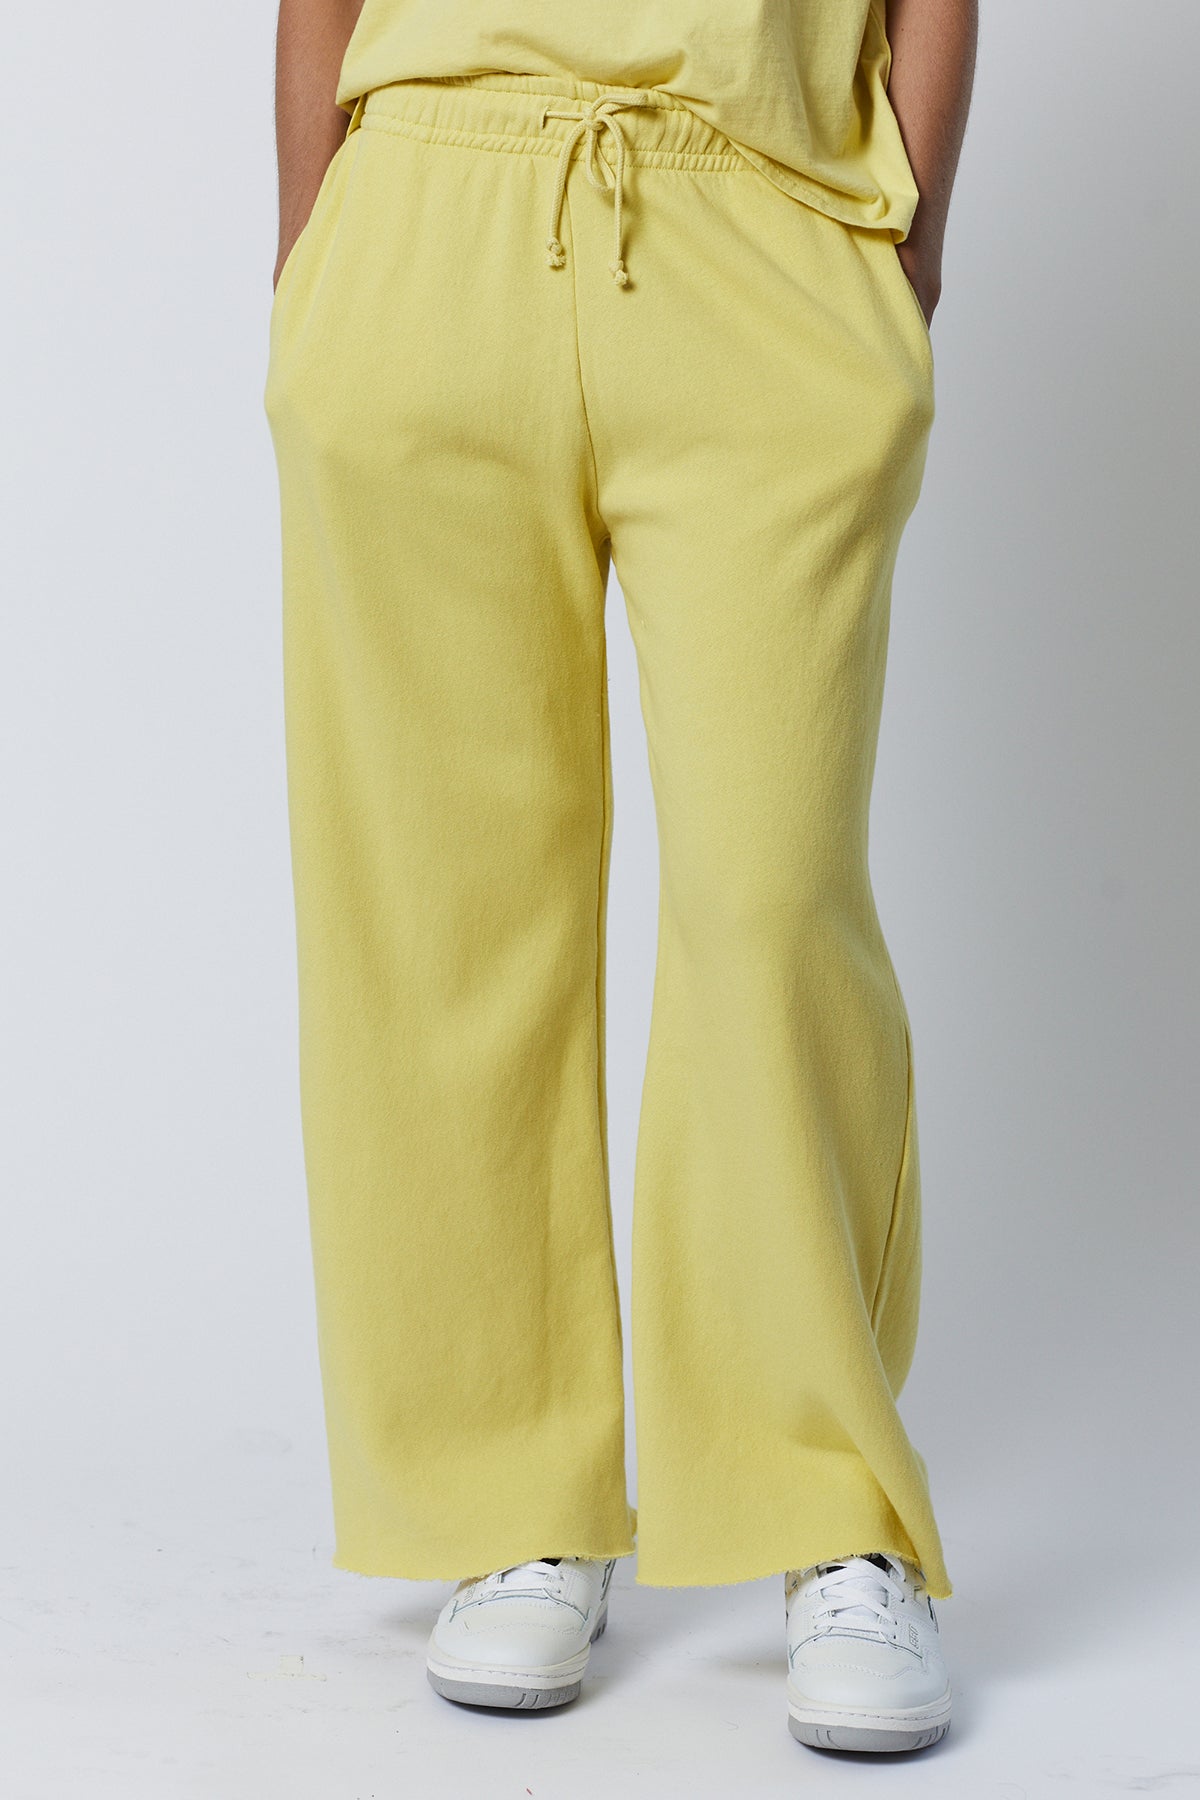 Montecito Sweatpant in lemon yellow front-26631041810625